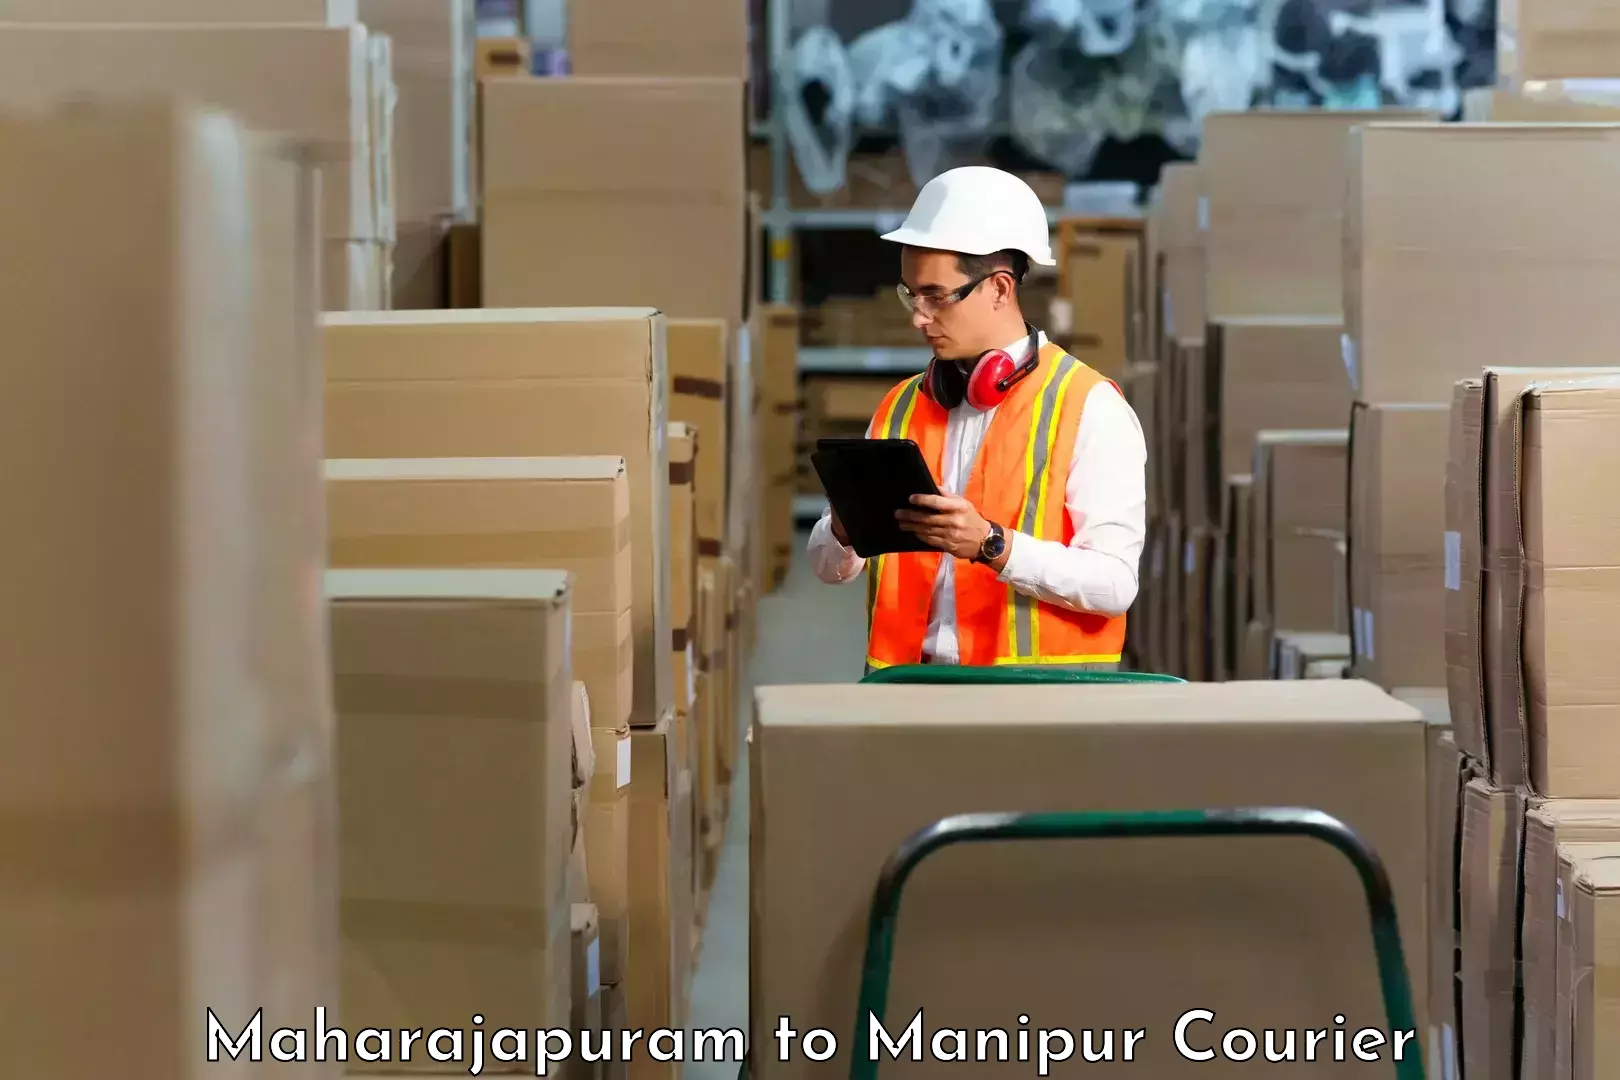 Premium courier services Maharajapuram to Senapati